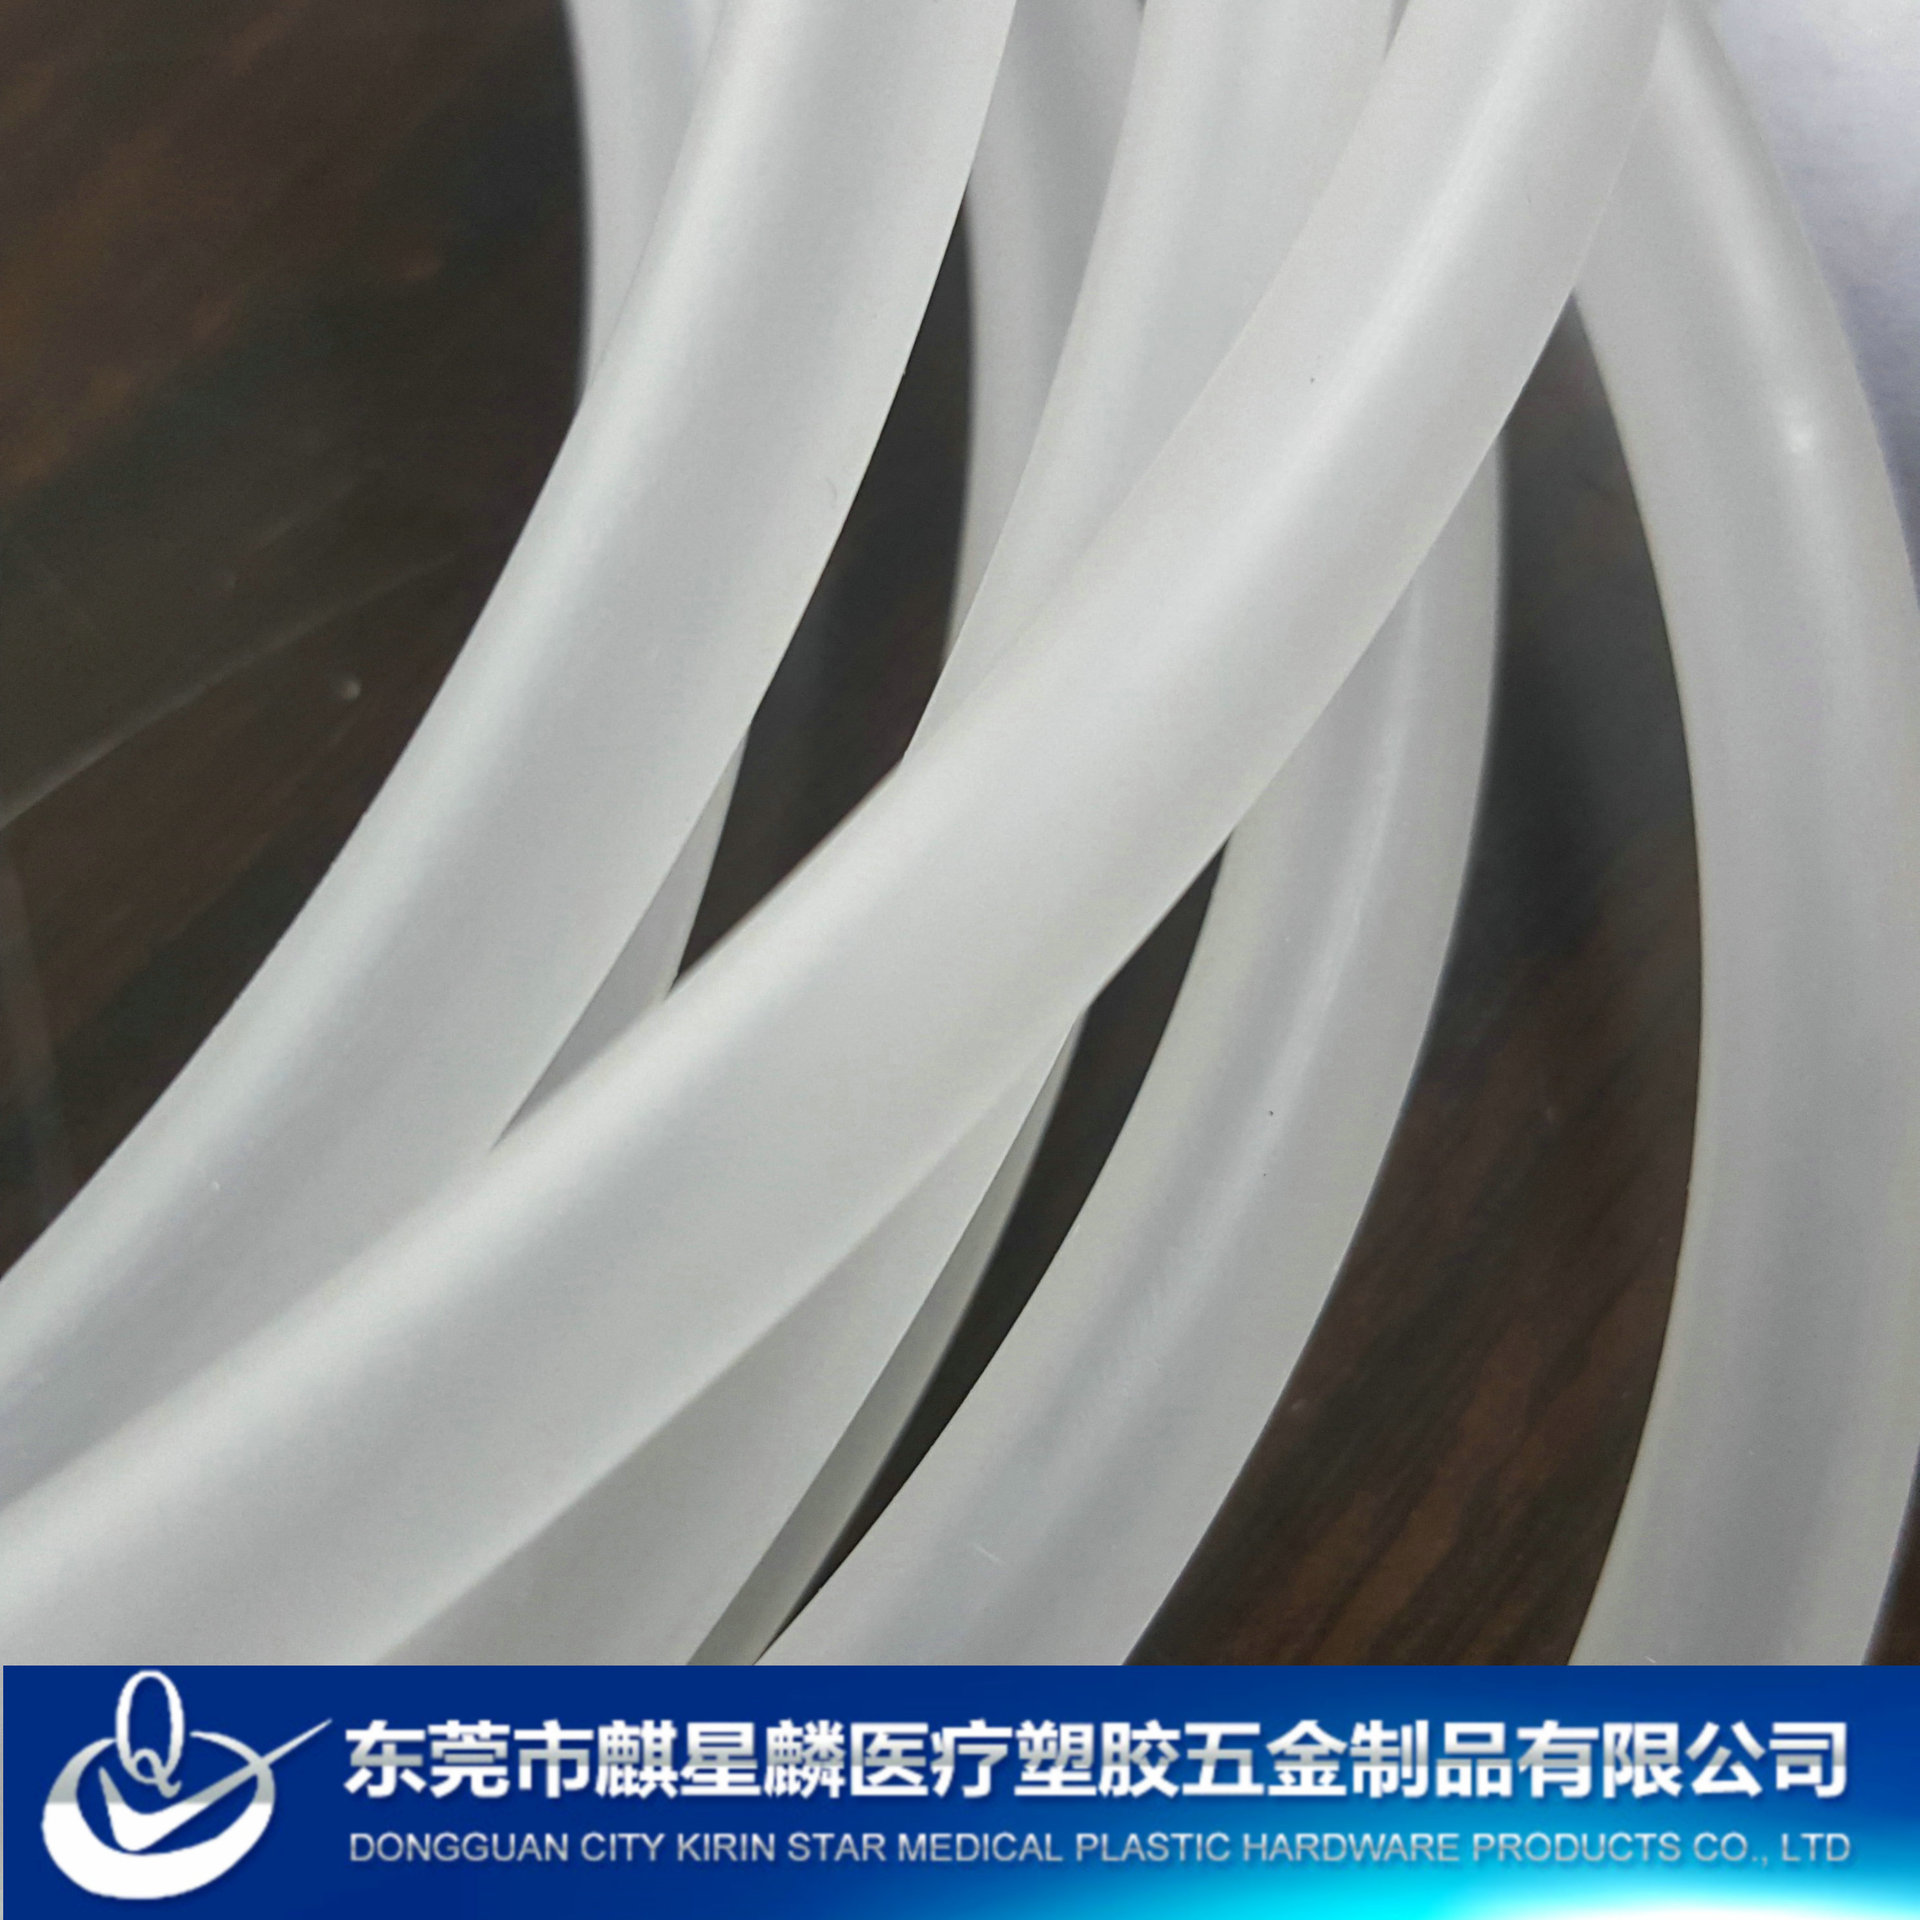 本廠生產直銷PVC透明軟管  PVC磨砂軟管  材料環保